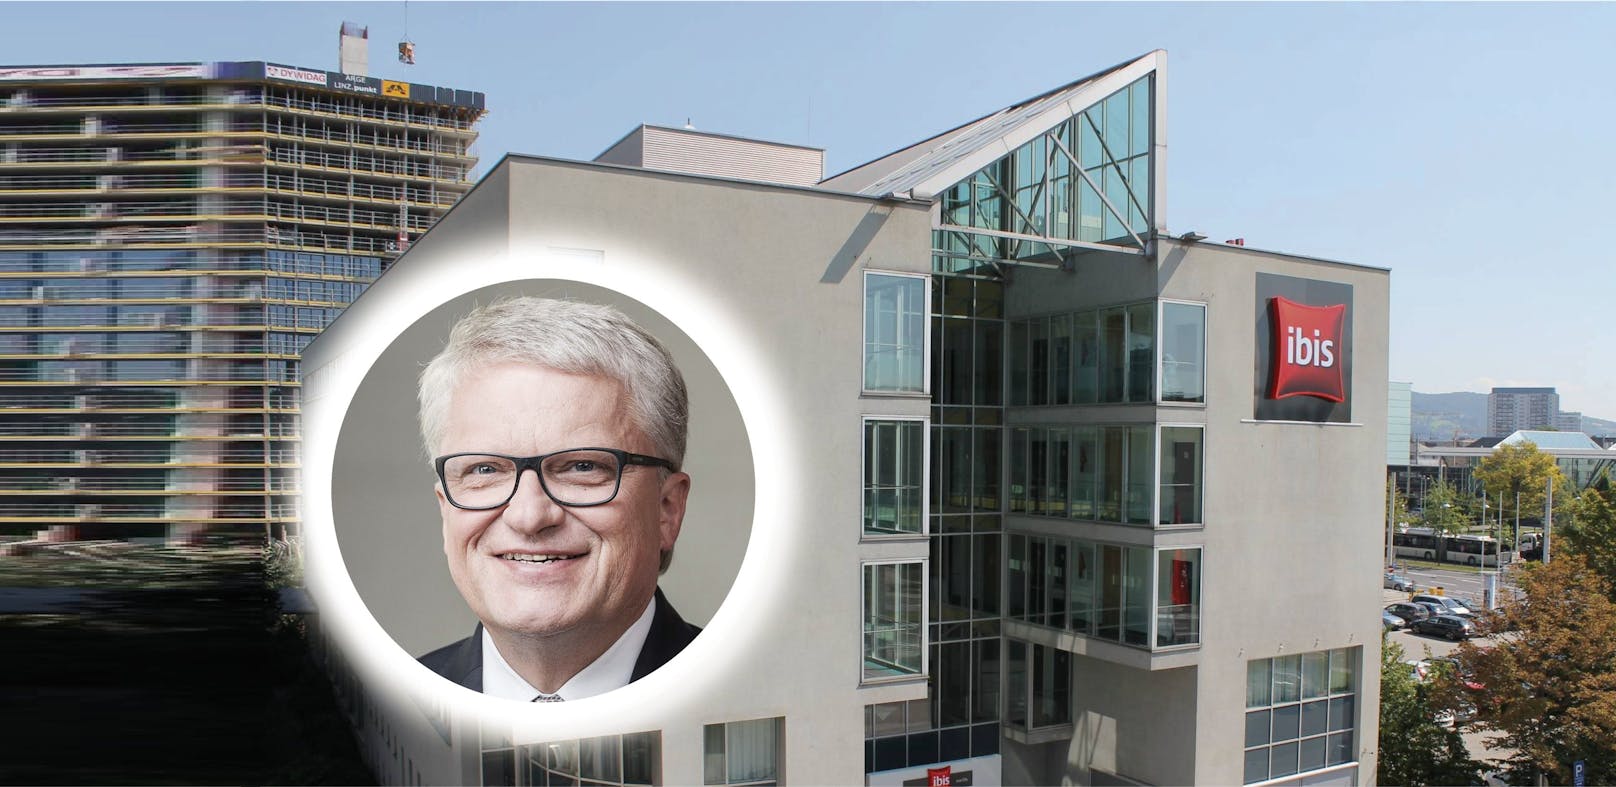 Das ehemalige Hotel Ibis soll zu einem Großquartier für Flüchtlinge werden. Bürgermeister Klaus Luger spricht sich klar dagegen aus.